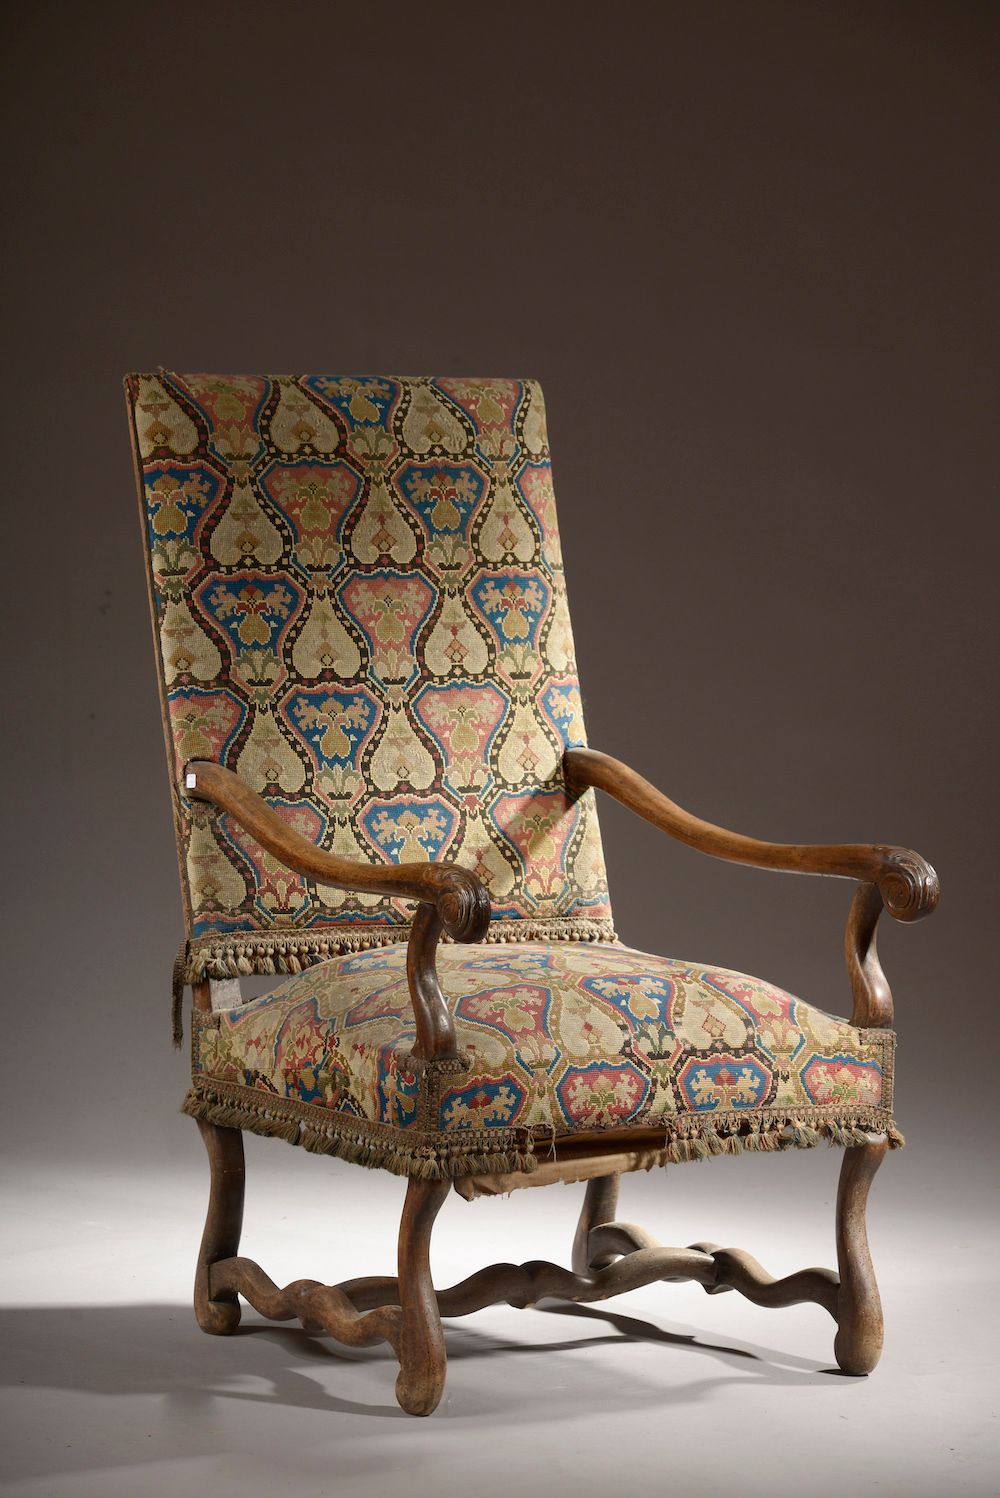 Null 
雕刻的木制扶手椅，有一个平坦的靠背和一个由支柱连接的 "羊骨 "底座（座椅结构受损）。




路易十四风格。




饰面为小圆点，带有几何图案。&hellip;